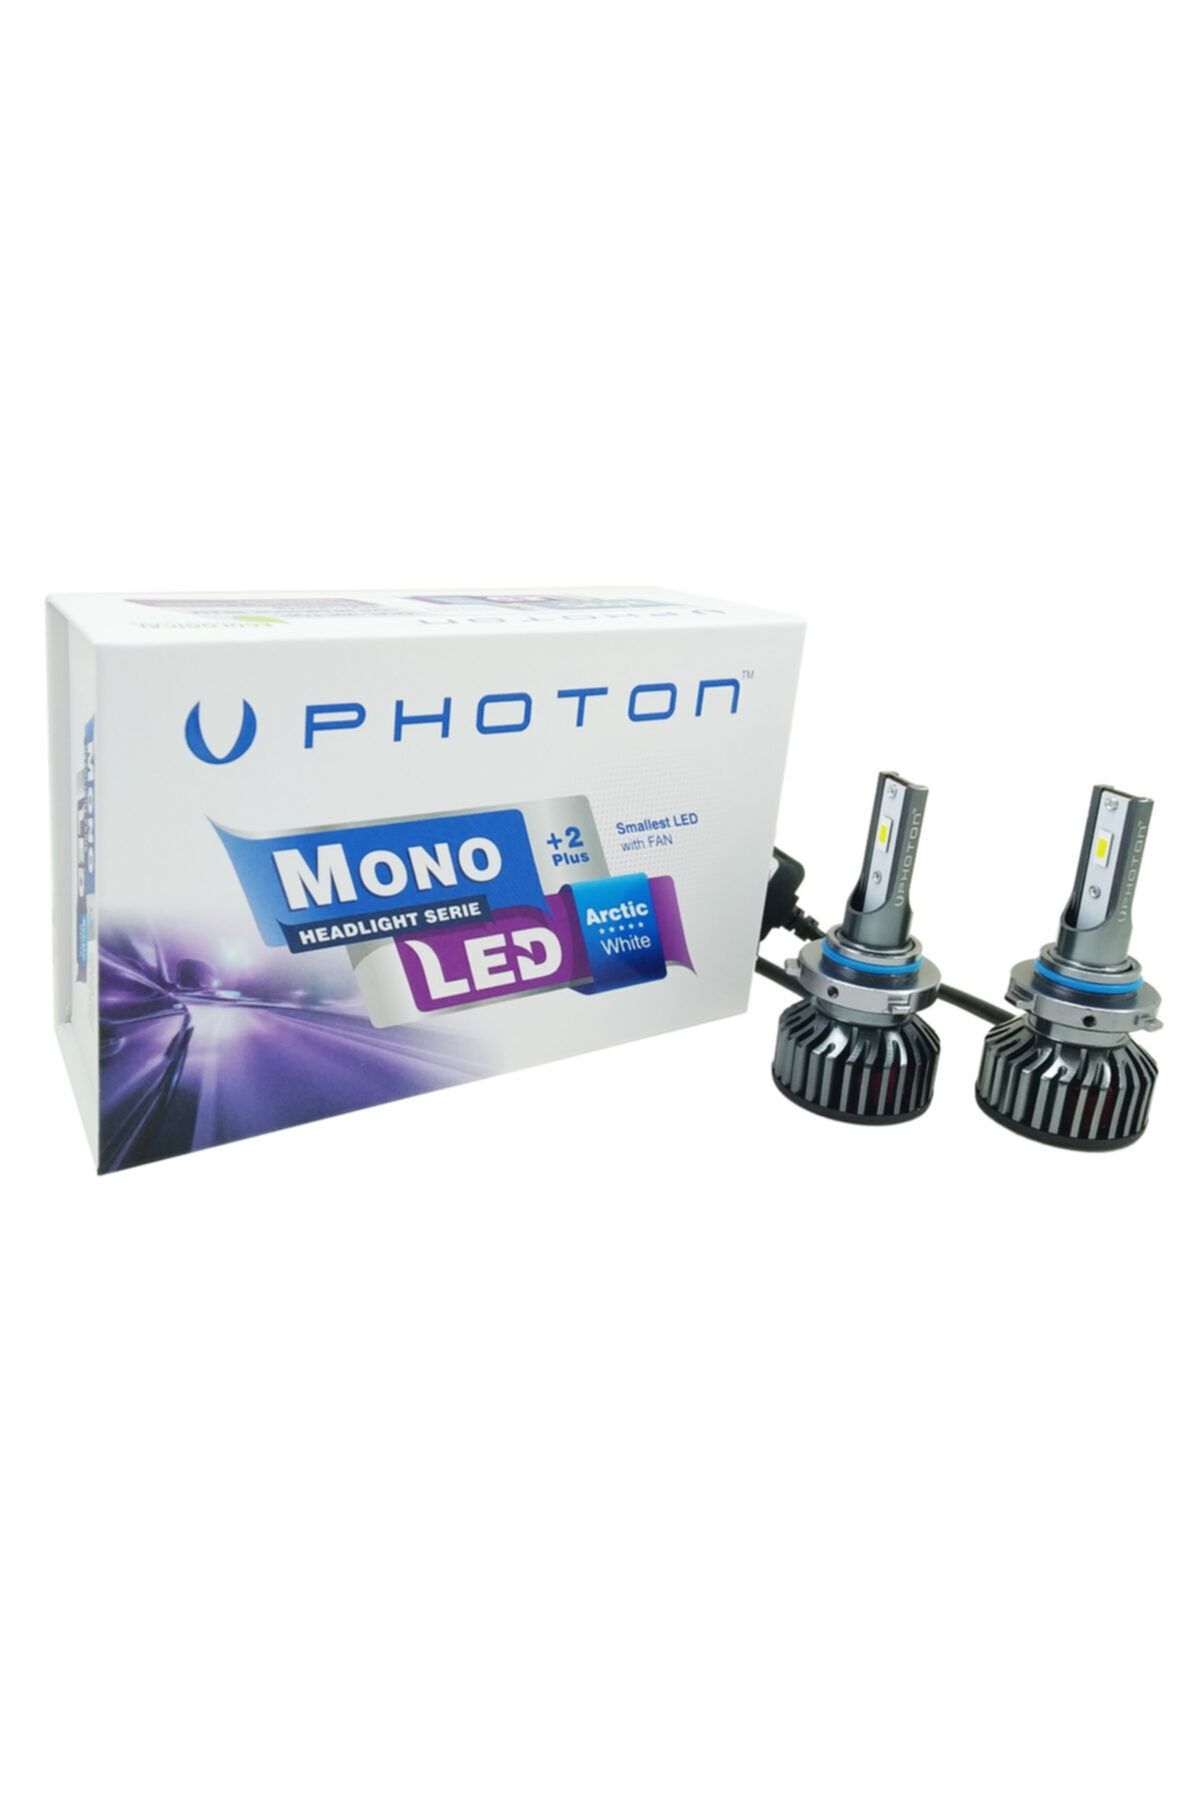 Photon Mono Serisi +2 Plus Led Xenon Hb4-9006